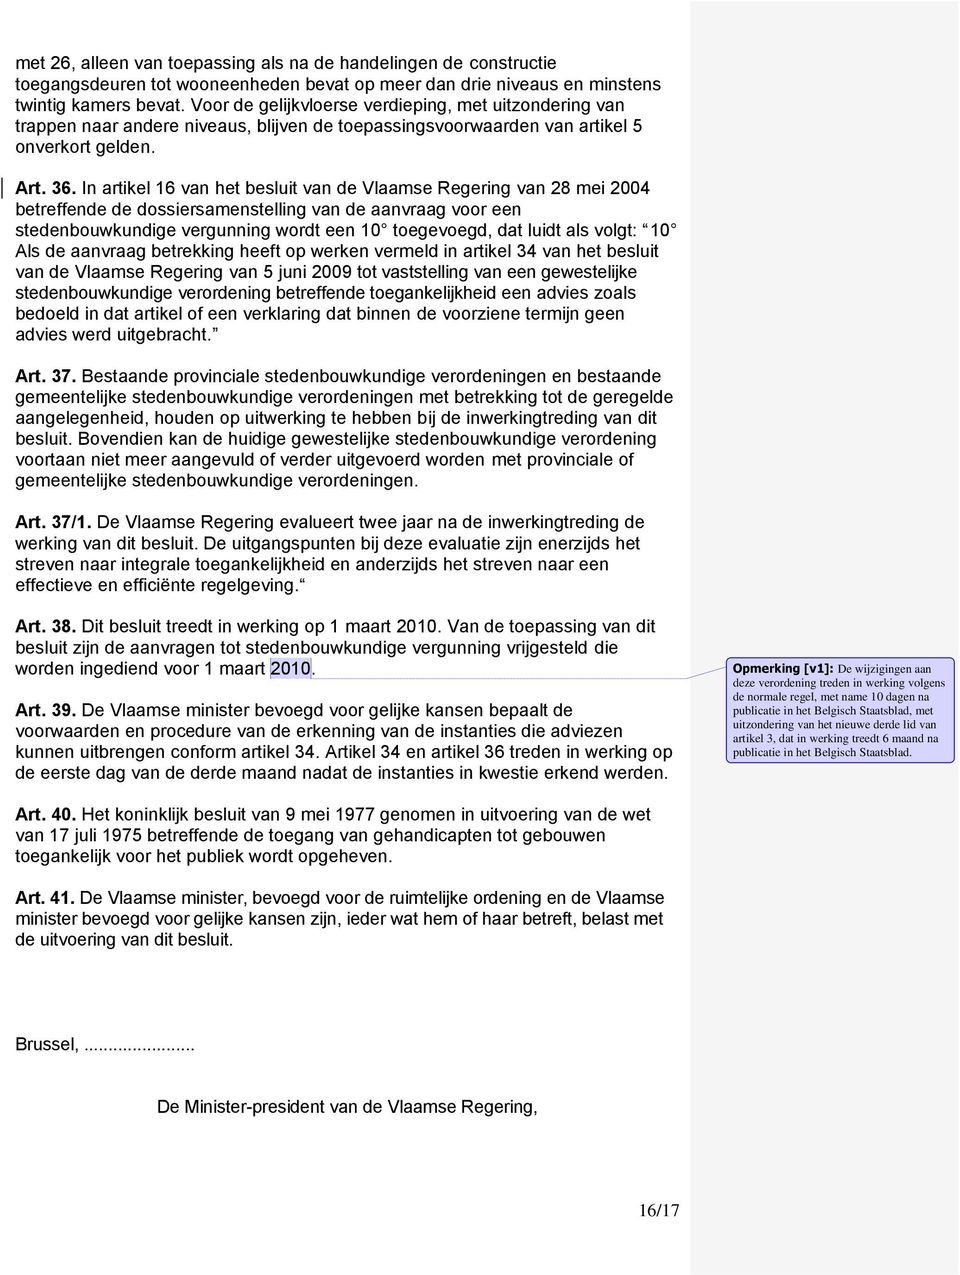 In artikel 16 van het besluit van de Vlaamse Regering van 28 mei 2004 betreffende de dossiersamenstelling van de aanvraag voor een stedenbouwkundige vergunning wordt een 10 toegevoegd, dat luidt als